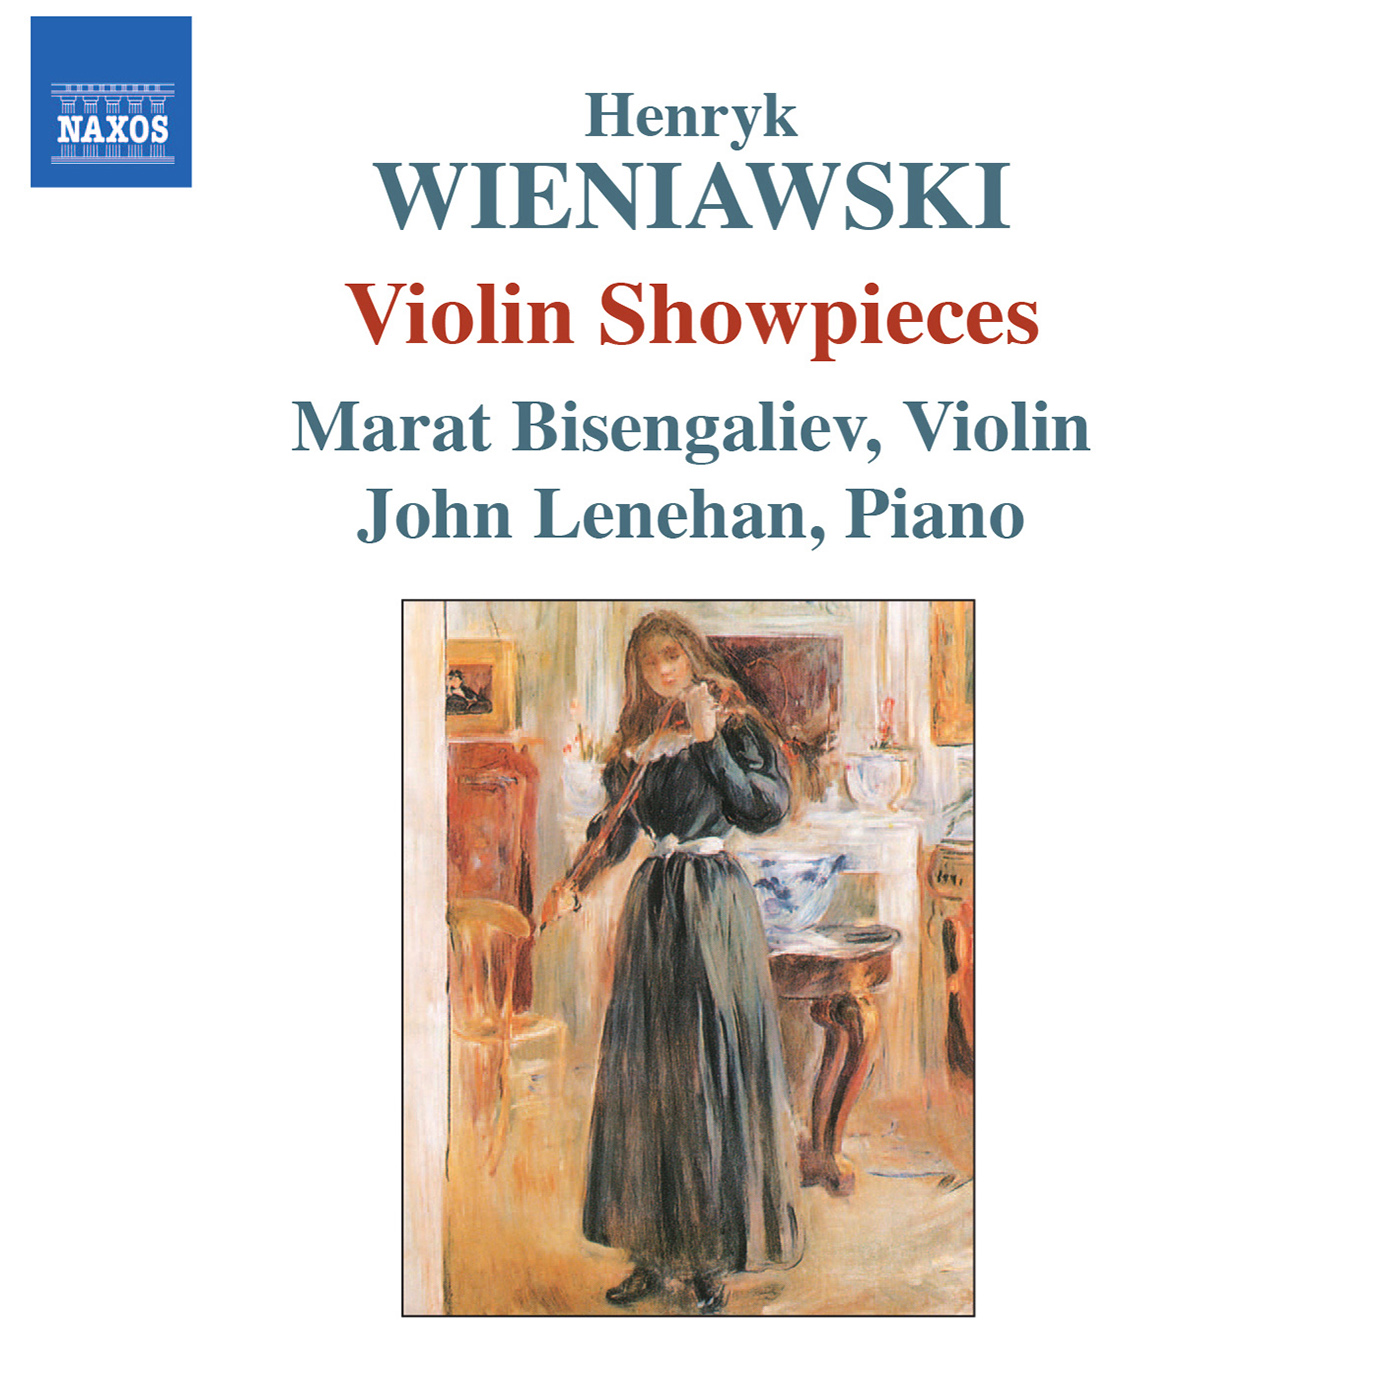 WIENIAWSKI: Violin Showpieces